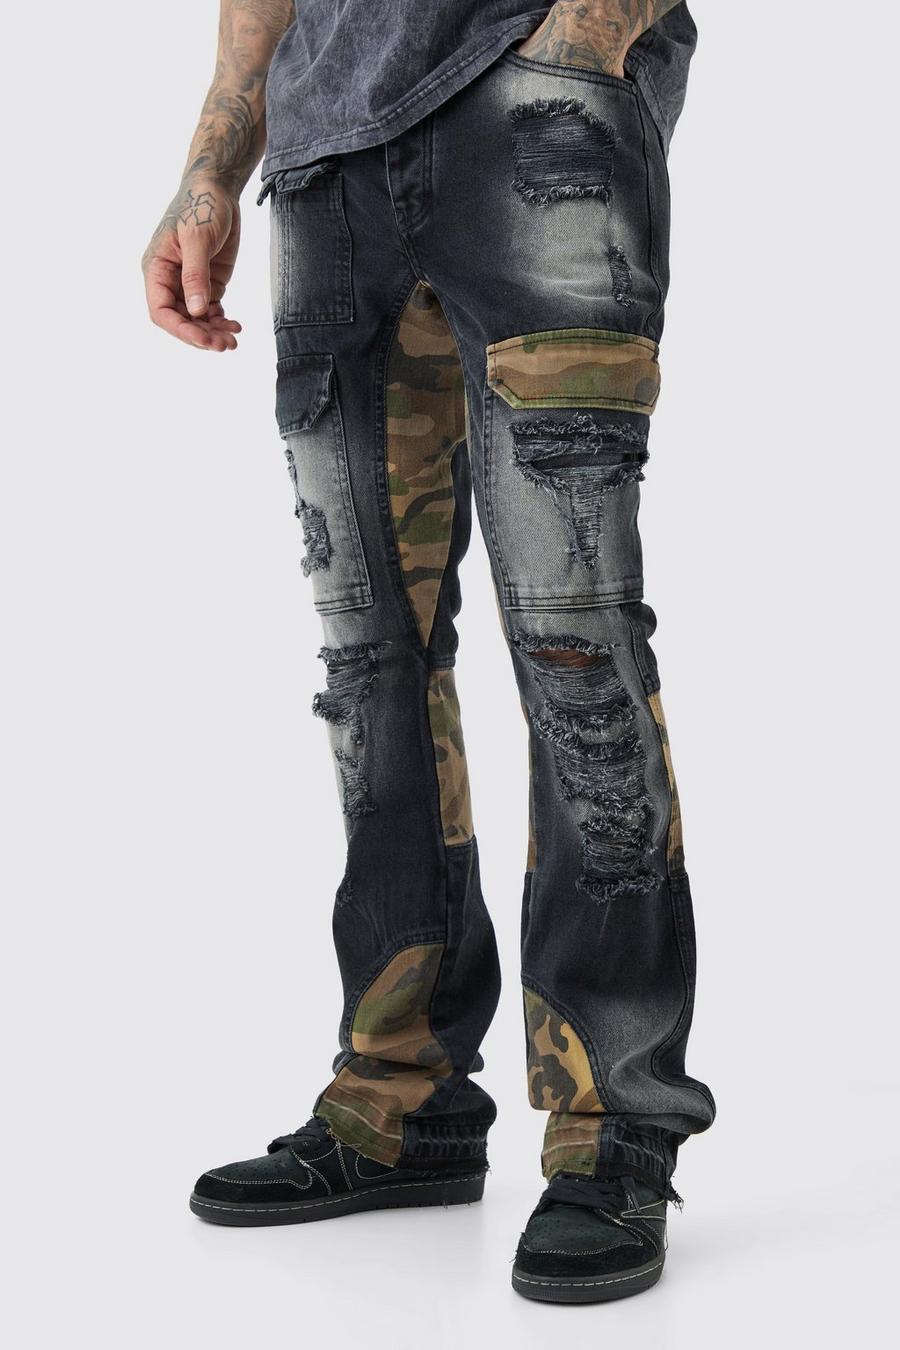 Jeans Cargo Tall Slim Fit in denim rigido in fantasia militare con rattoppi, Washed black